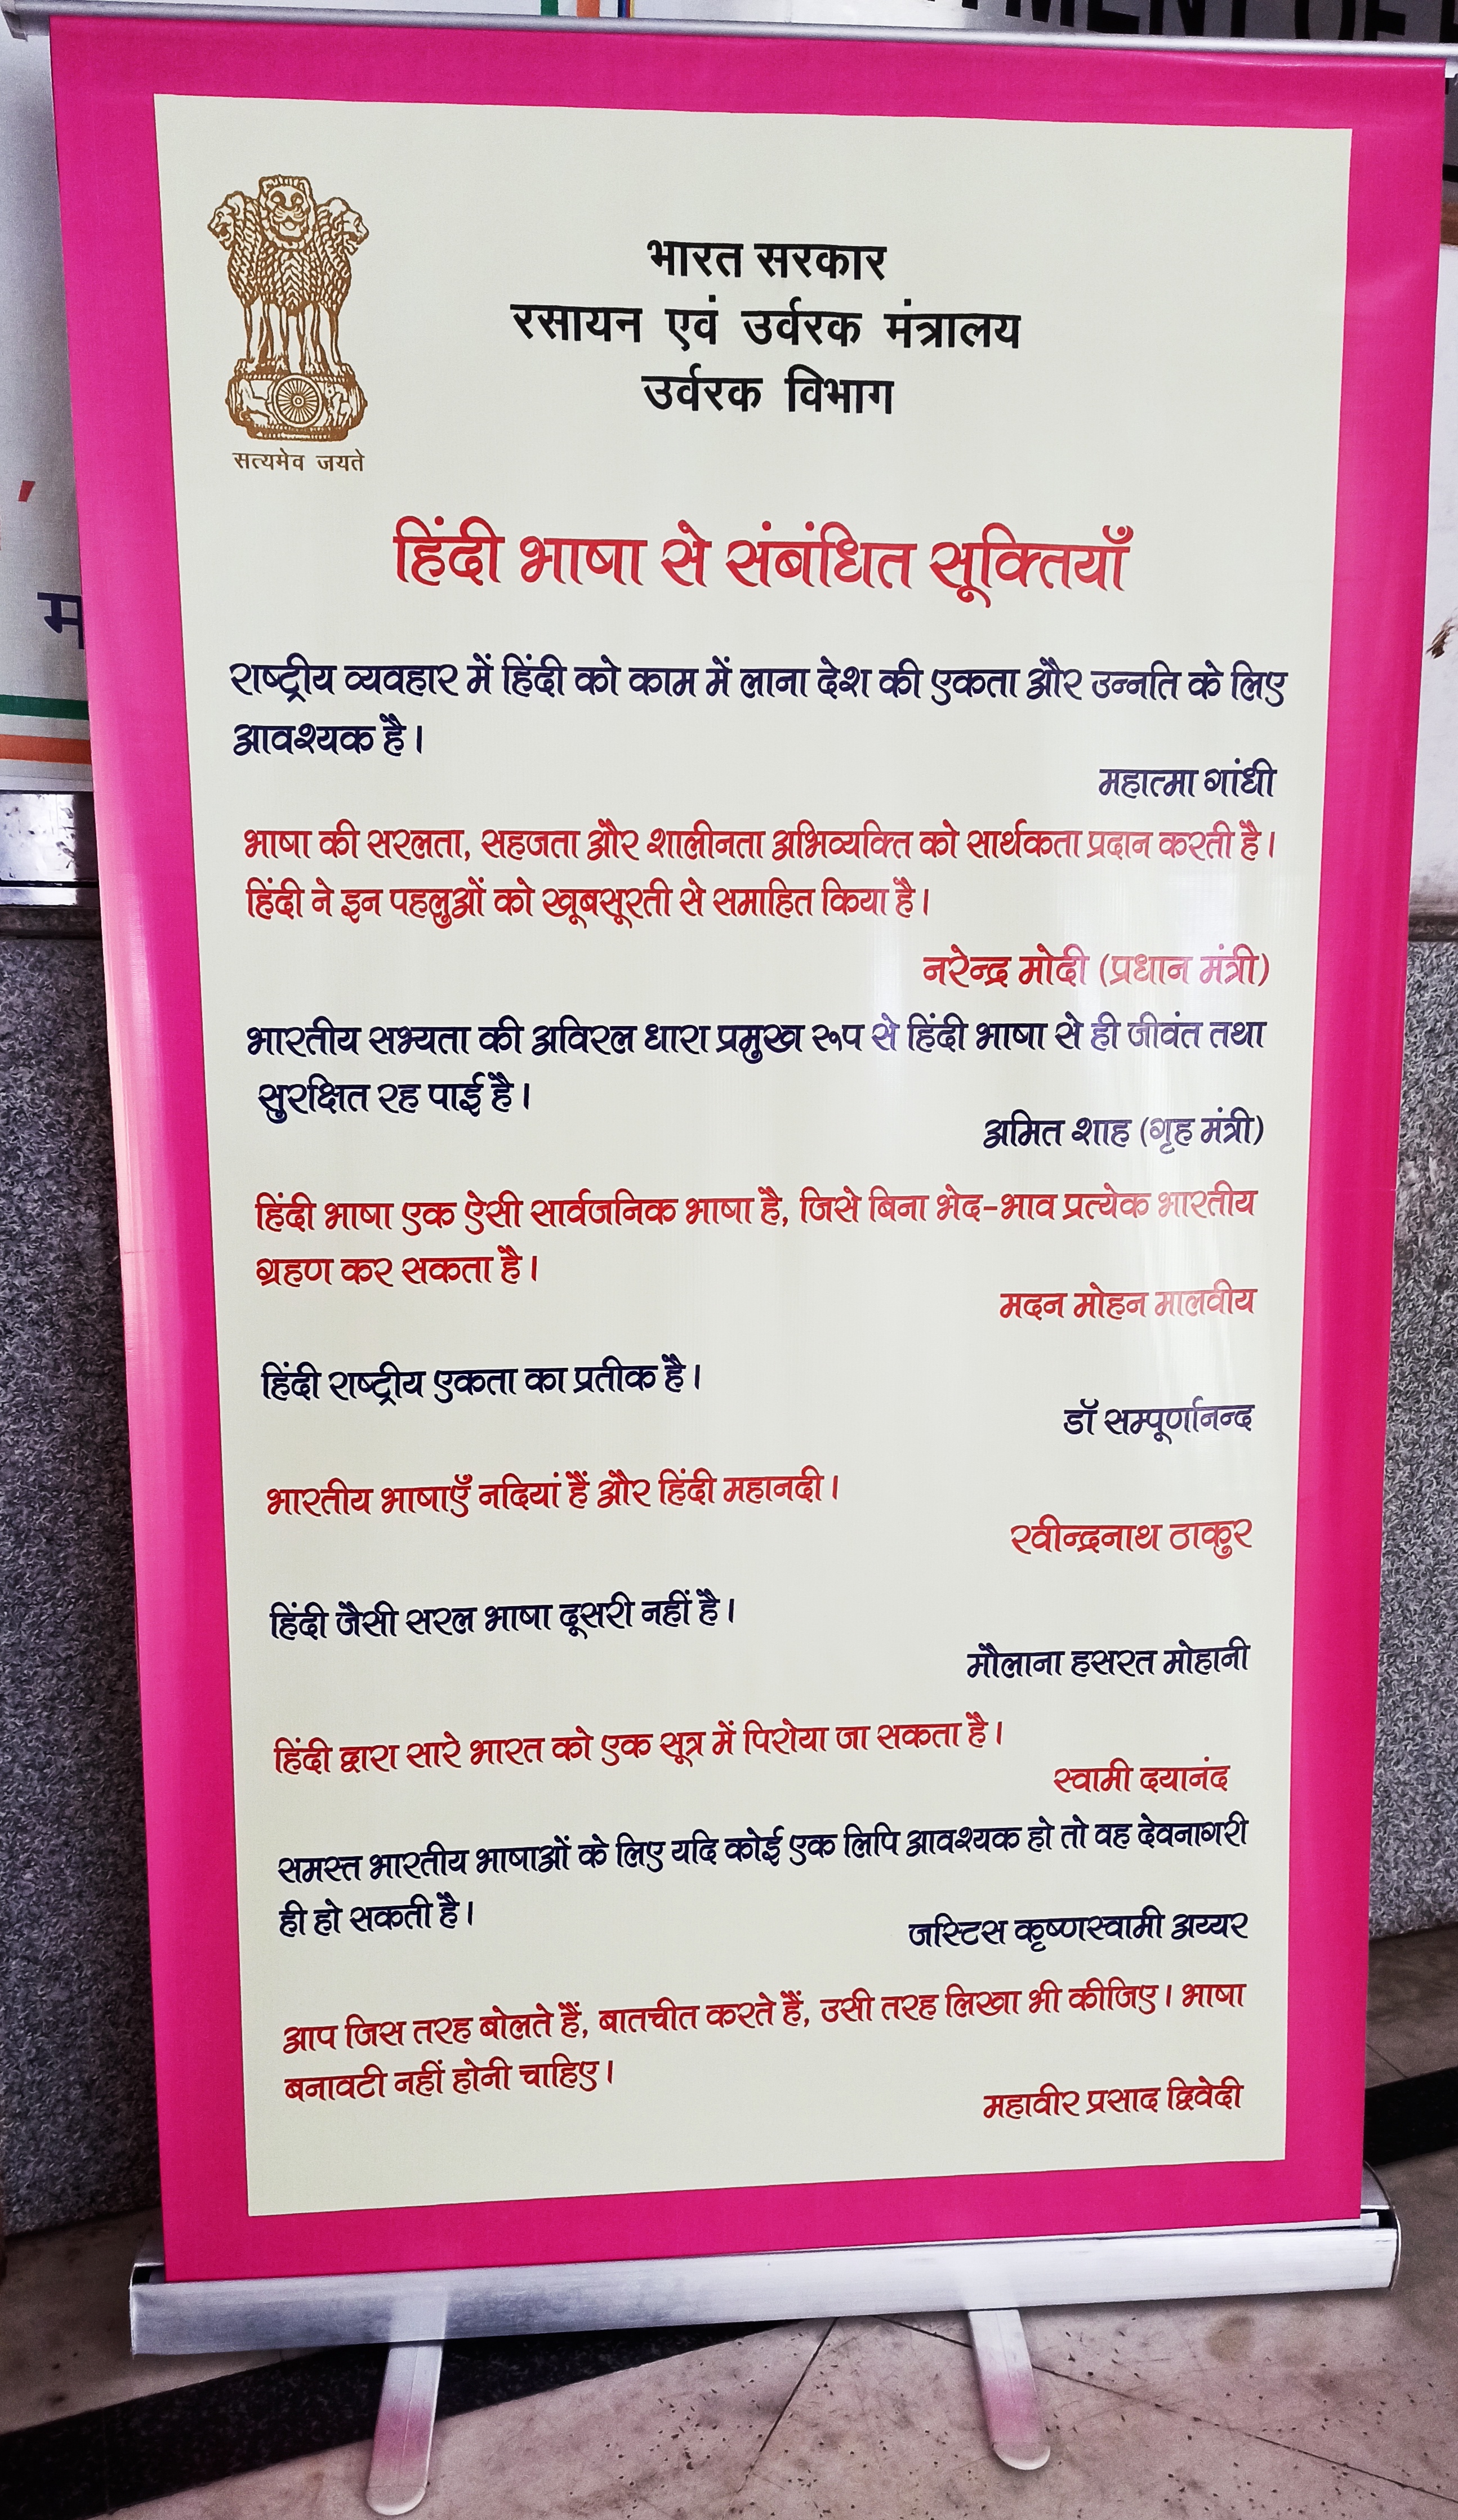 उर्वरक विभाग में 11 से 25 सितंबर,2020 तक हिंदी पखवाड़ा का आयोजन किया जा रहा है। इस दौरान हिंदी के संबंध में महापुरुषों के कथनों/सूक्तियों को विभाग में प्रदर्शित किया गया।